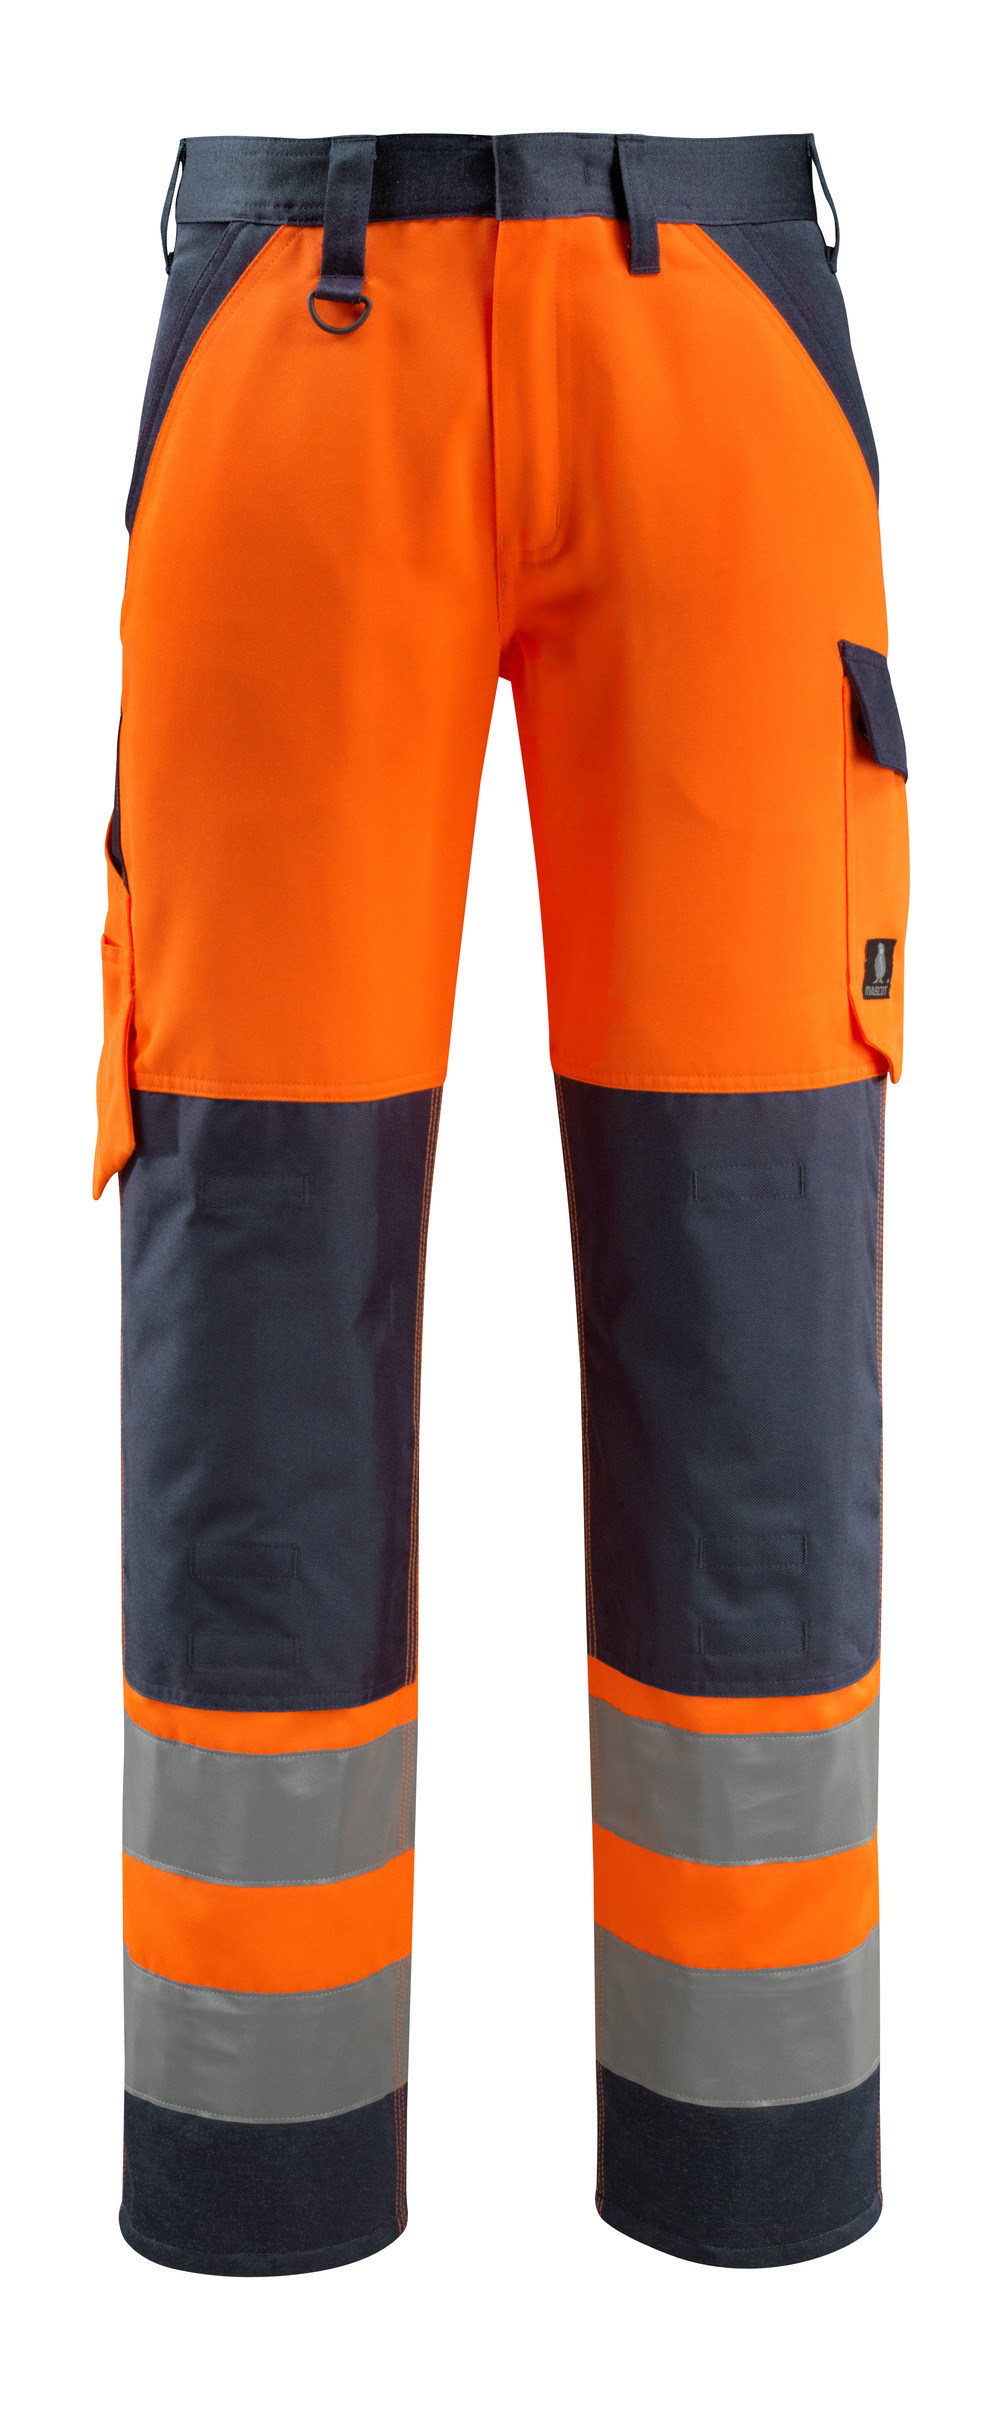 MASCOT-Warnschutz, Warn-Bund-Hose, Maitland,  76 cm, 285 g/m², orange/schwarzblau

